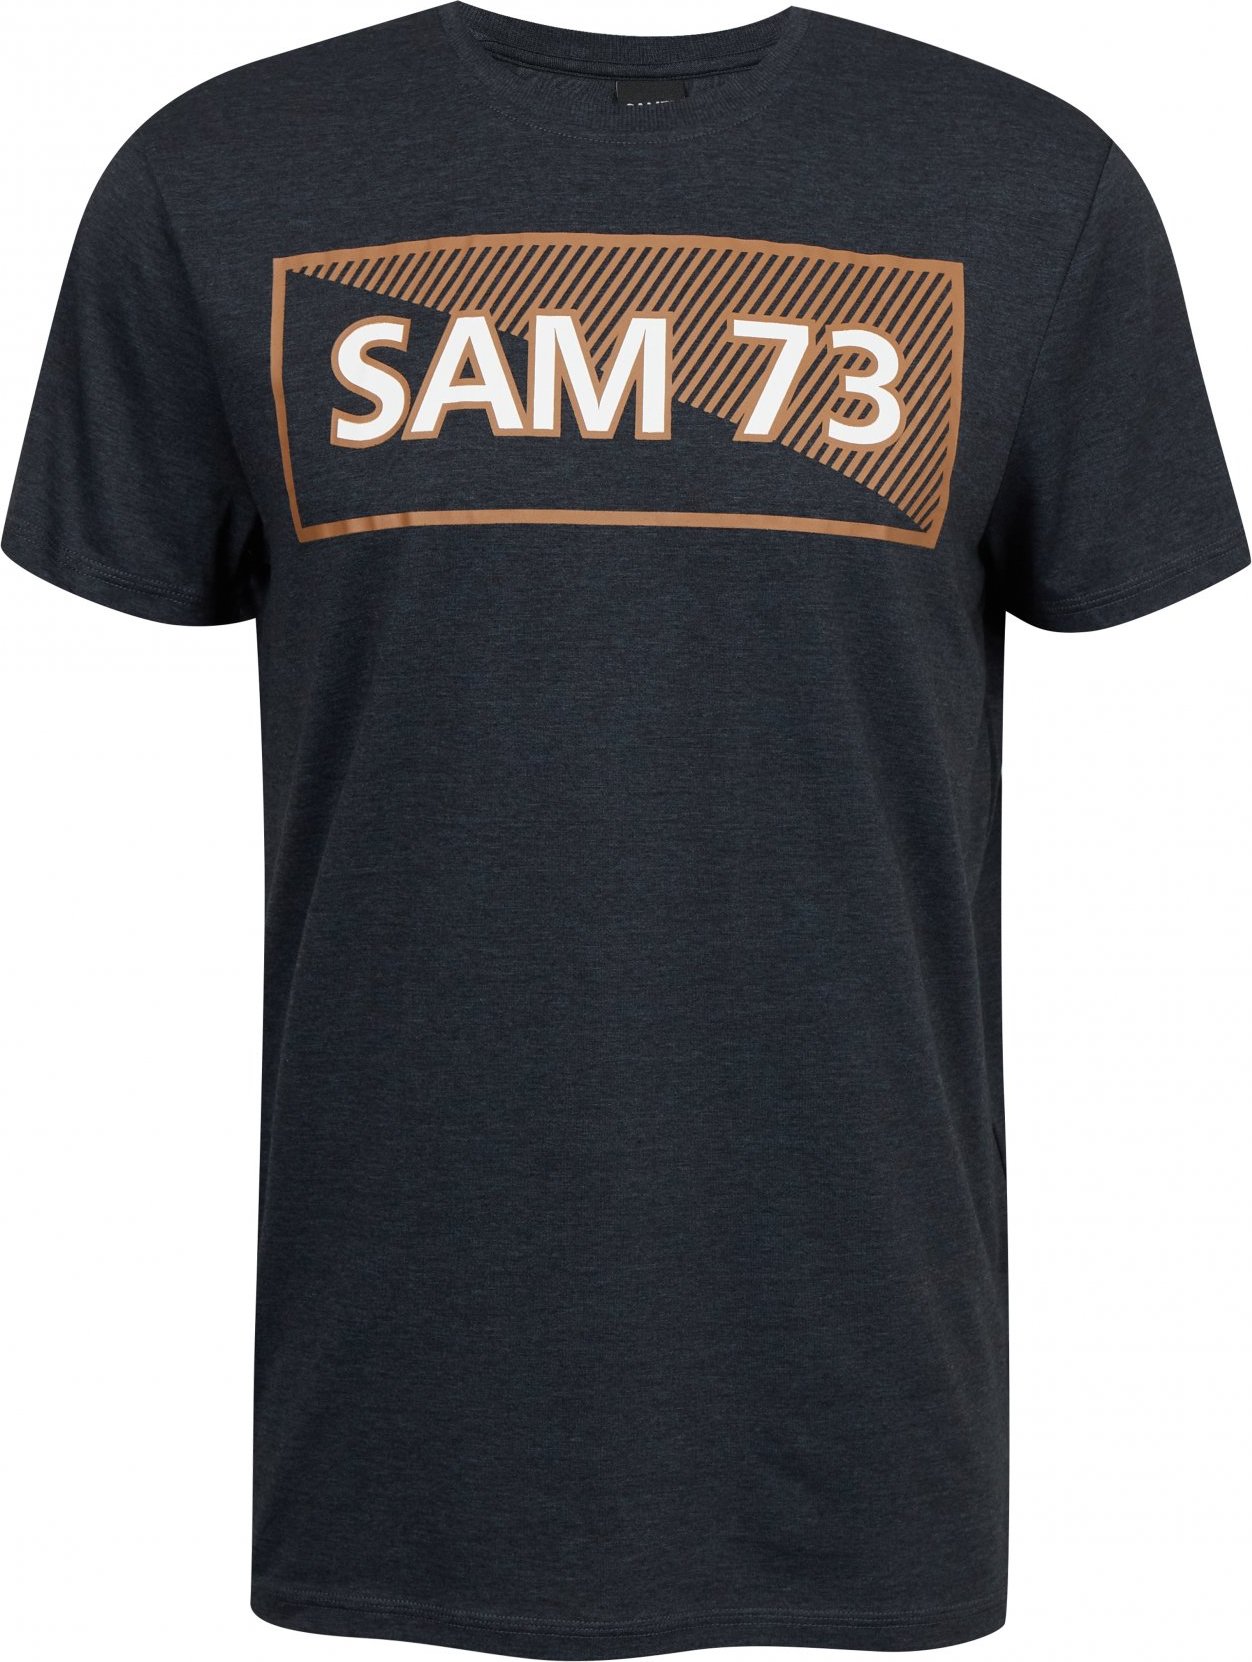 Pánské triko SAM73 fenri černé Velikost: XL